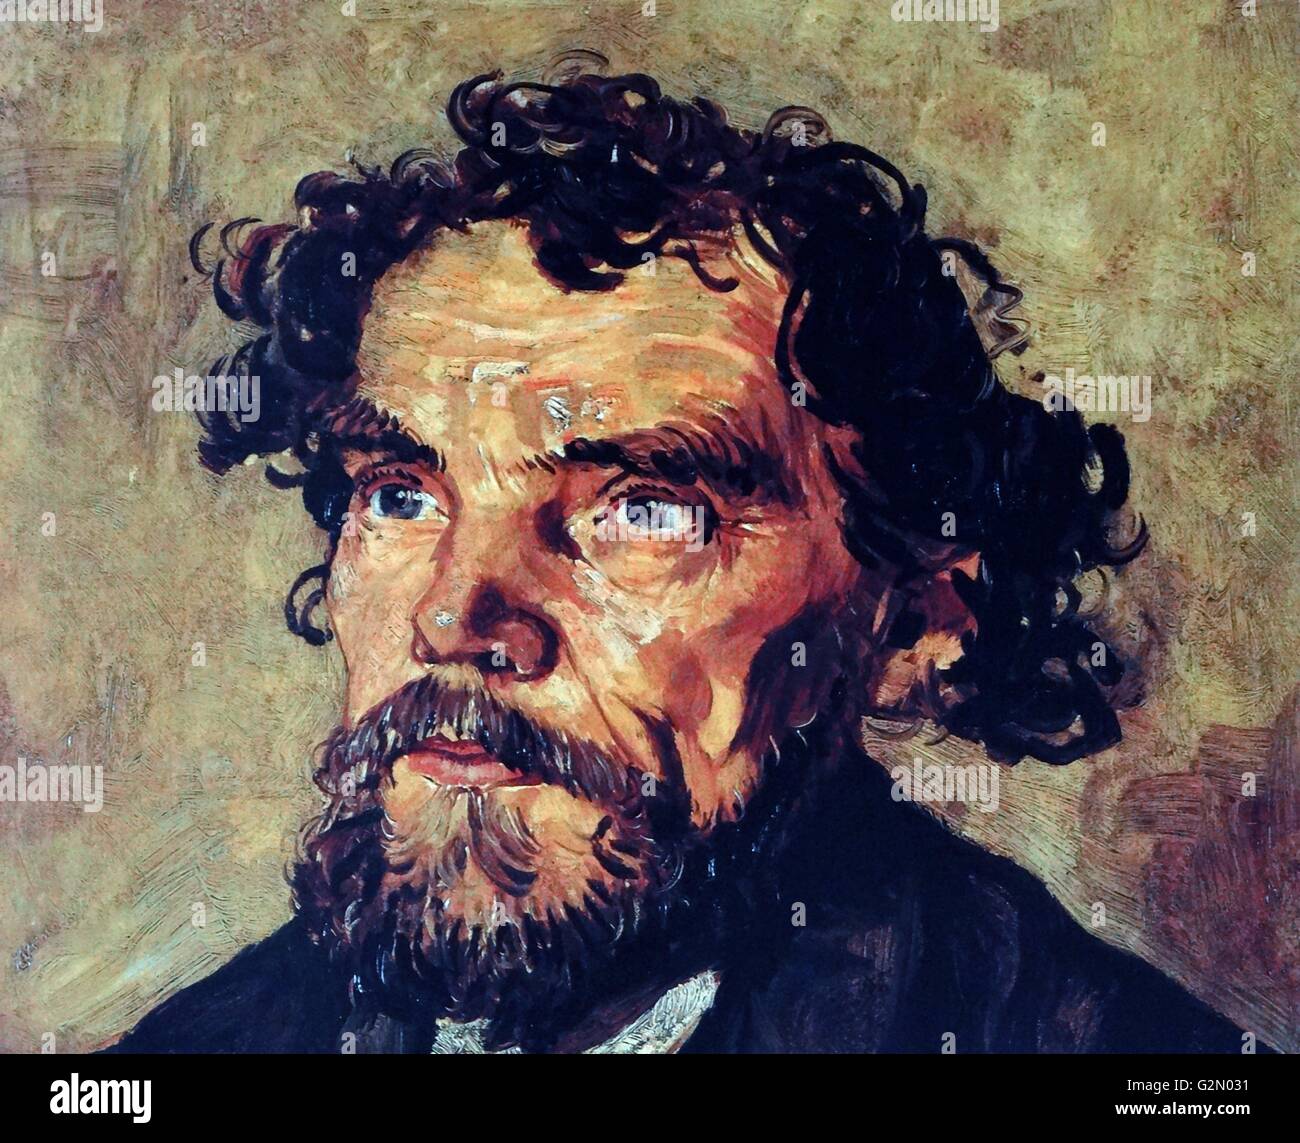 Öl auf Leinwand Gemälde des berühmten holländischen Malers Vincent Van Gogh (30. März 1853 - 29. Juli 1890), die Arbeit mit dem Titel "Kopf eines Mannes". Im Jahr 1886 abgeschlossen. Stockfoto